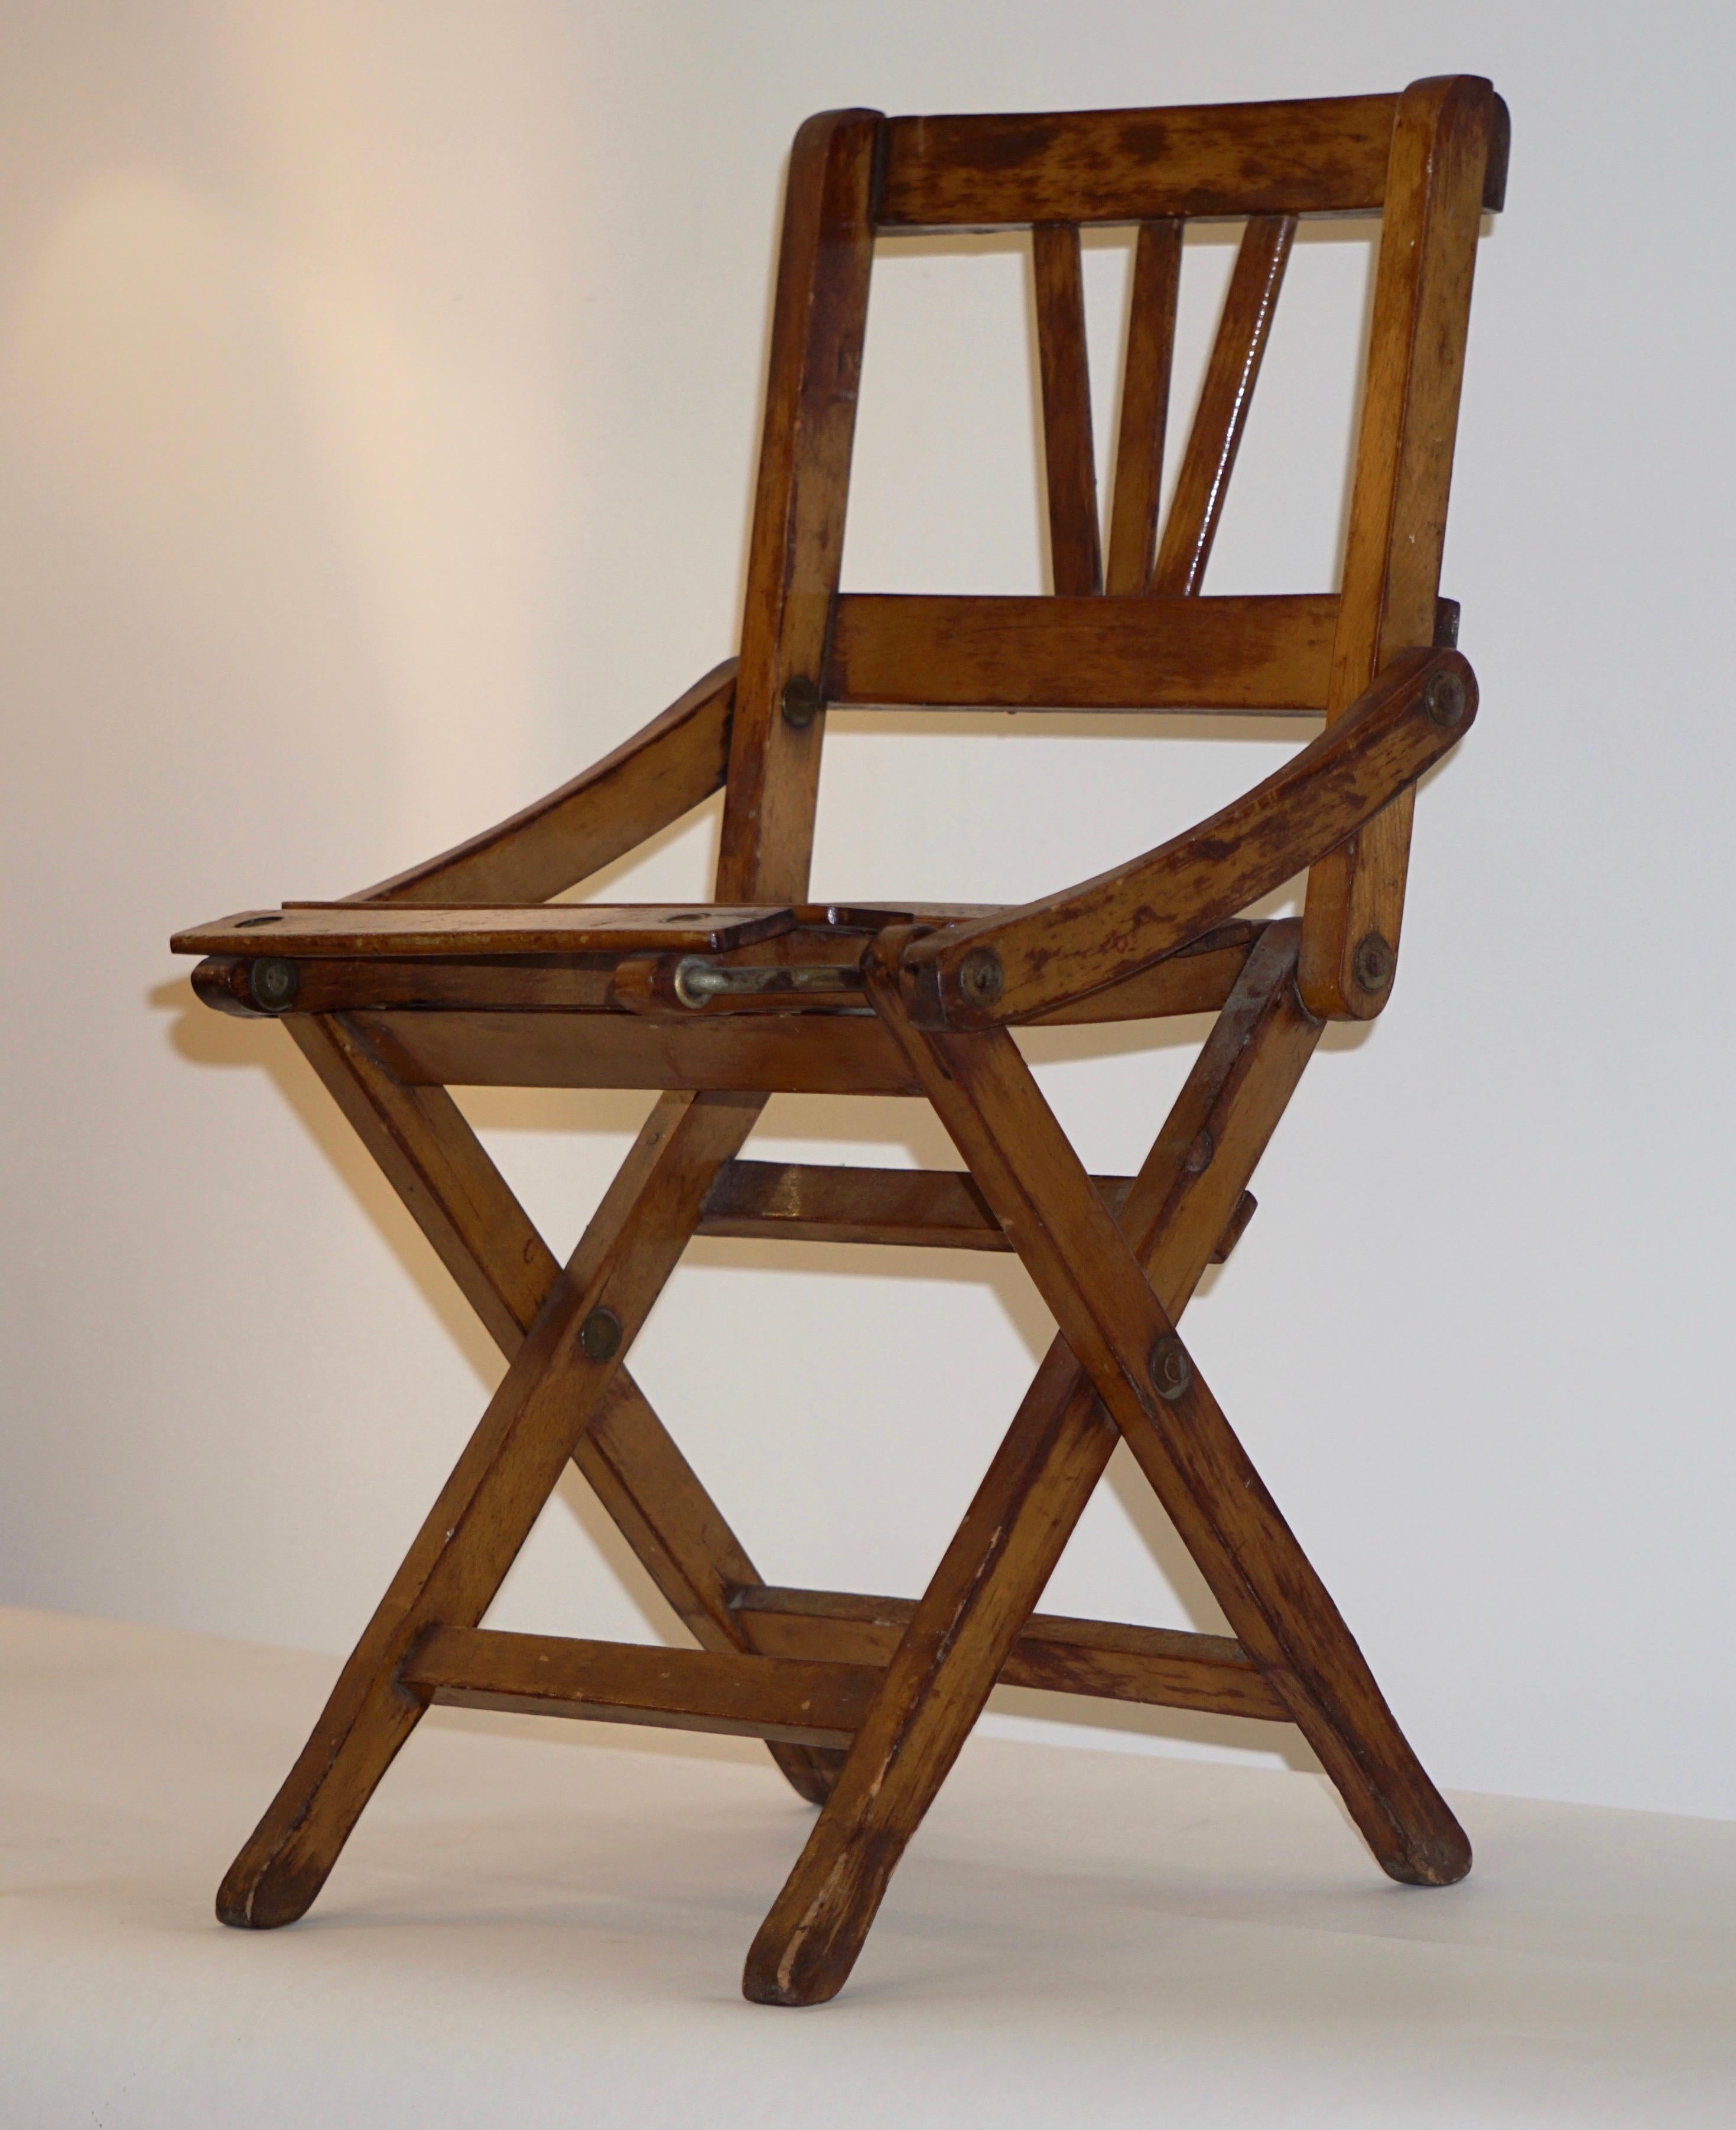 Ein bezauberndes Modell eines Klappstuhls, vollständig in Italien aus Eiche handgefertigt, 
qualität der Konstruktion und Liebe zum Detail, in ausgezeichnetem Originalzustand. Ein dekorativer Gegenstand, der Spaß macht oder als Puppenstuhl